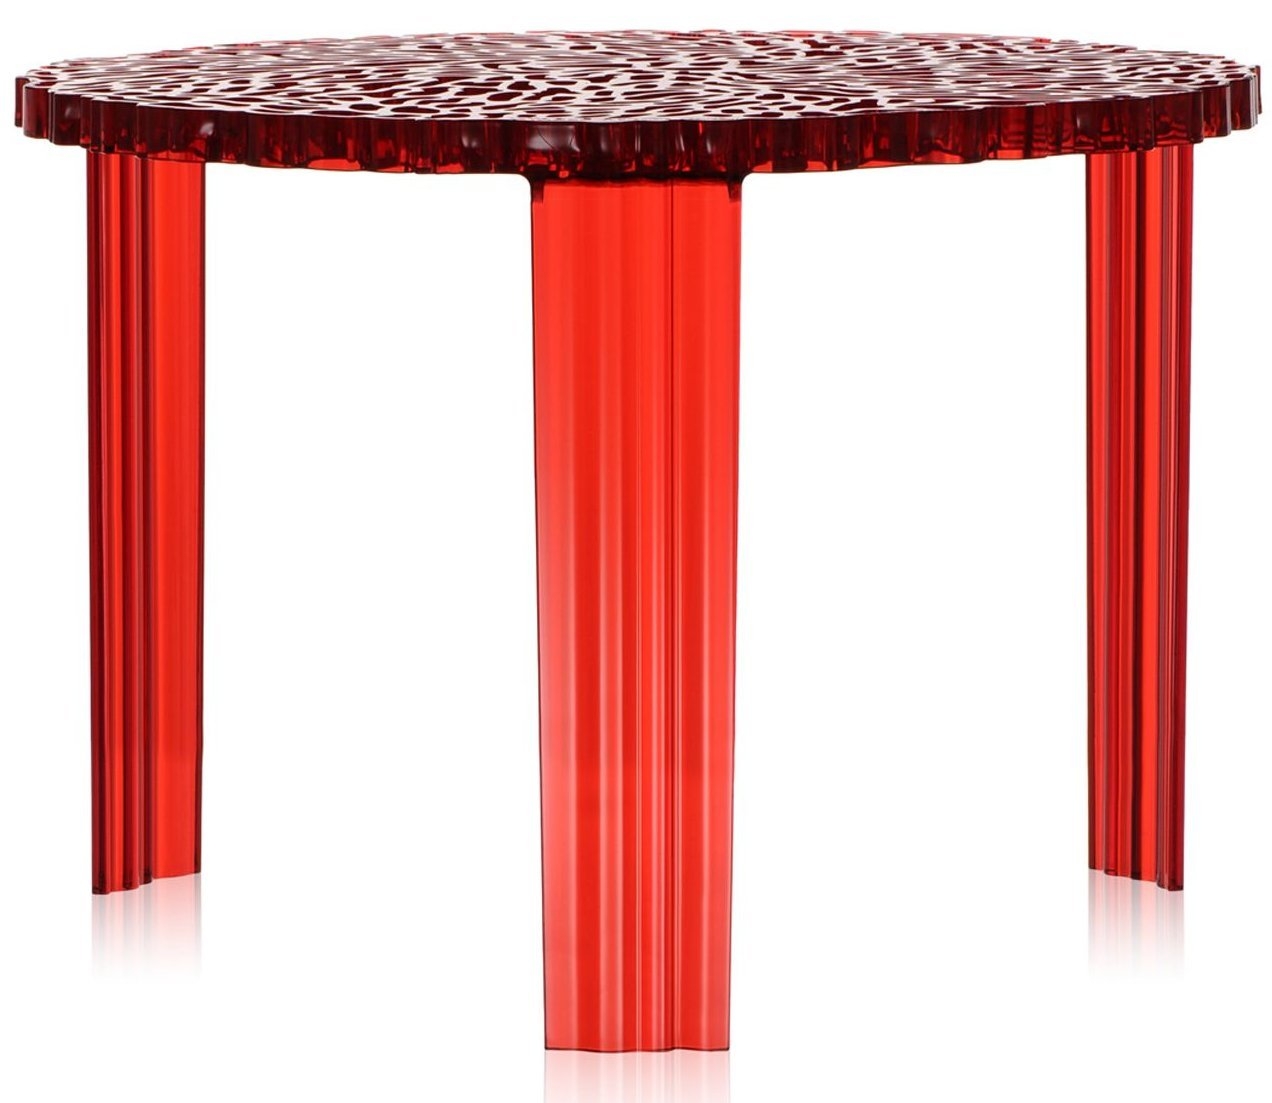 Masuta Kartell T-Table design Patricia Urquiola 50cm h 36cm rosu transparent Kartell